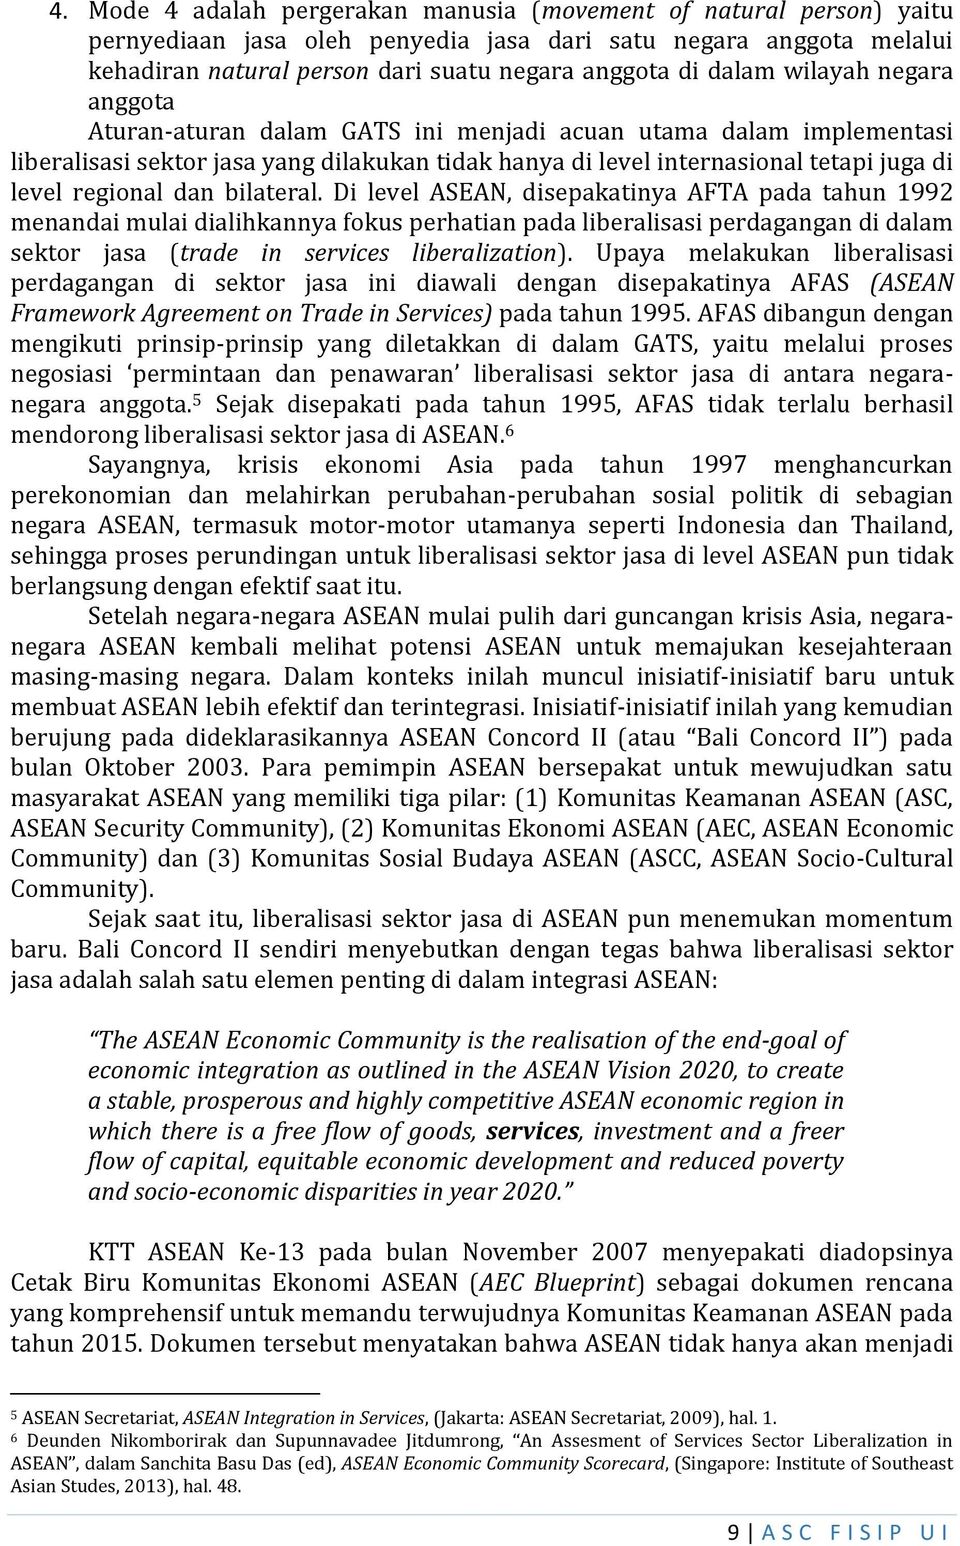 bilateral. Di level ASEAN, disepakatinya AFTA pada tahun 1992 menandai mulai dialihkannya fokus perhatian pada liberalisasi perdagangan di dalam sektor jasa (trade in services liberalization).